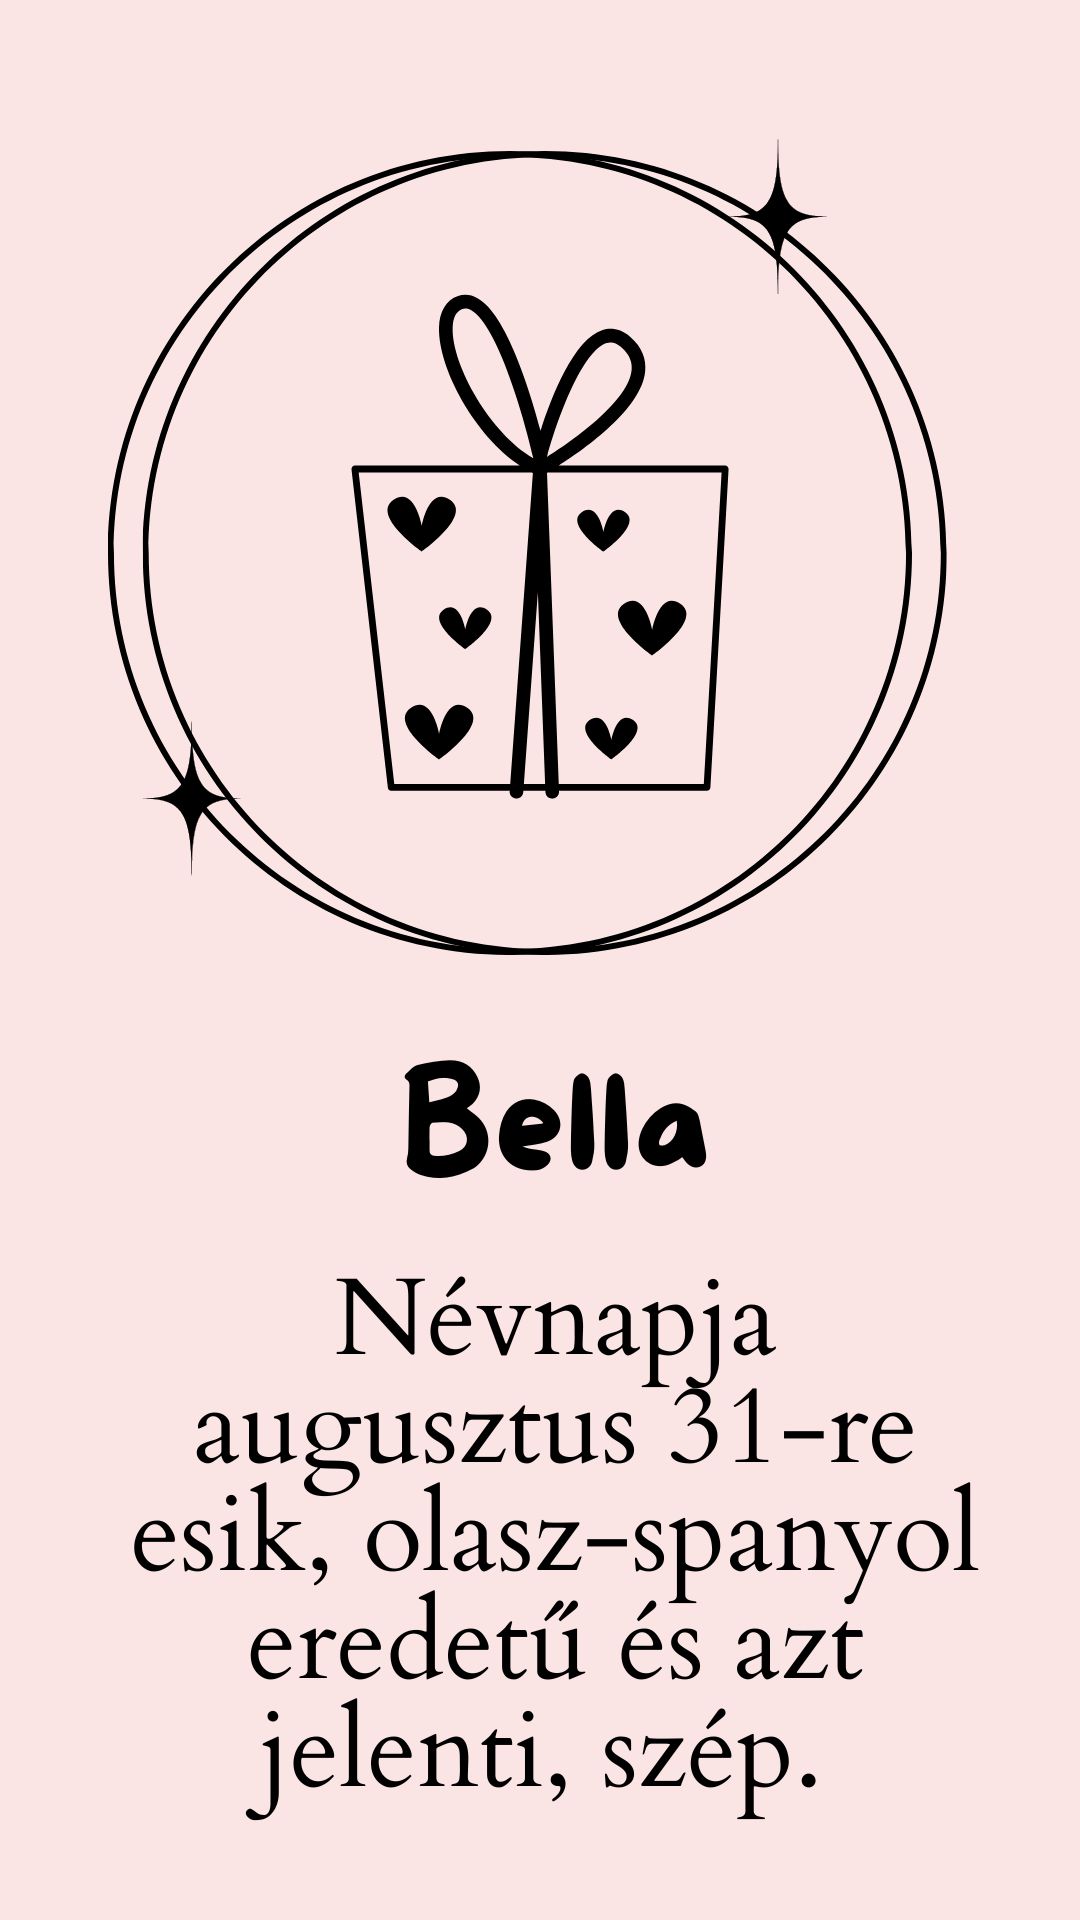 Bella név jelentése